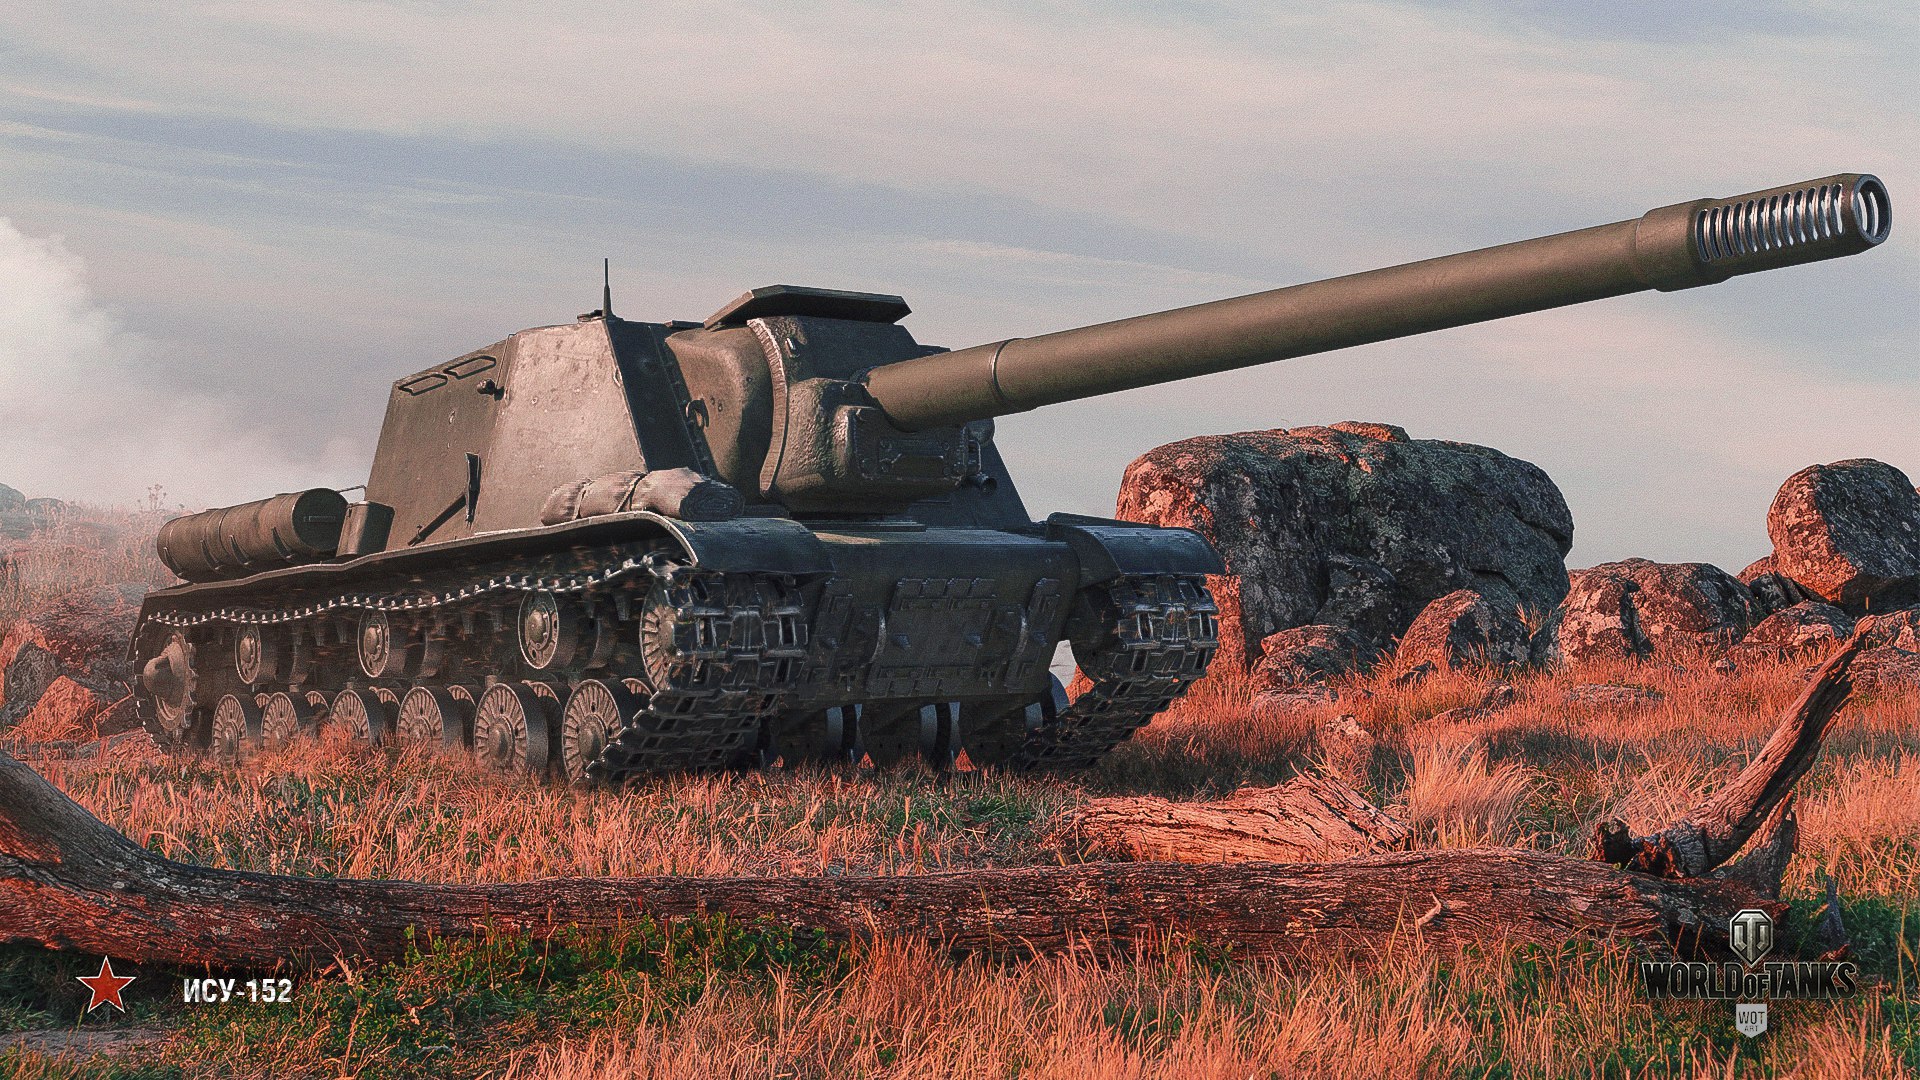 Http ису. ИСУ-152 World of Tanks. ИСУ-152 зверобой World of Tanks. Танк ИСУ 152 зверобой. «Зверобой» ИСУ-152 WOT.